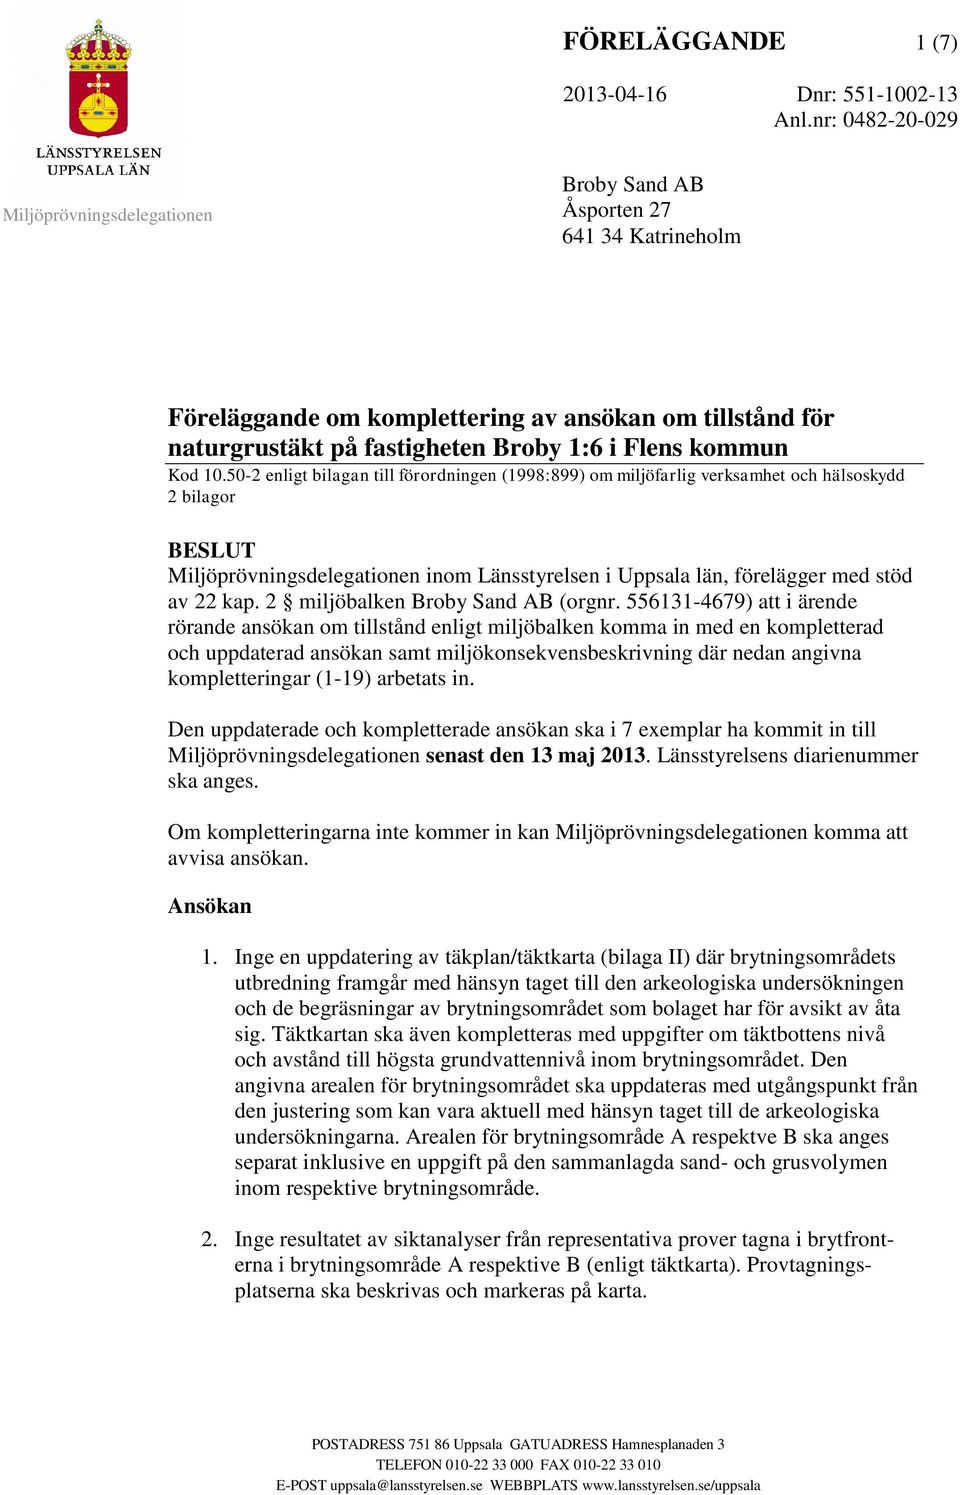 50-2 enligt bilagan till förordningen (1998:899) om miljöfarlig verksamhet och hälsoskydd 2 bilagor BESLUT inom Länsstyrelsen i Uppsala län, förelägger med stöd av 22 kap.